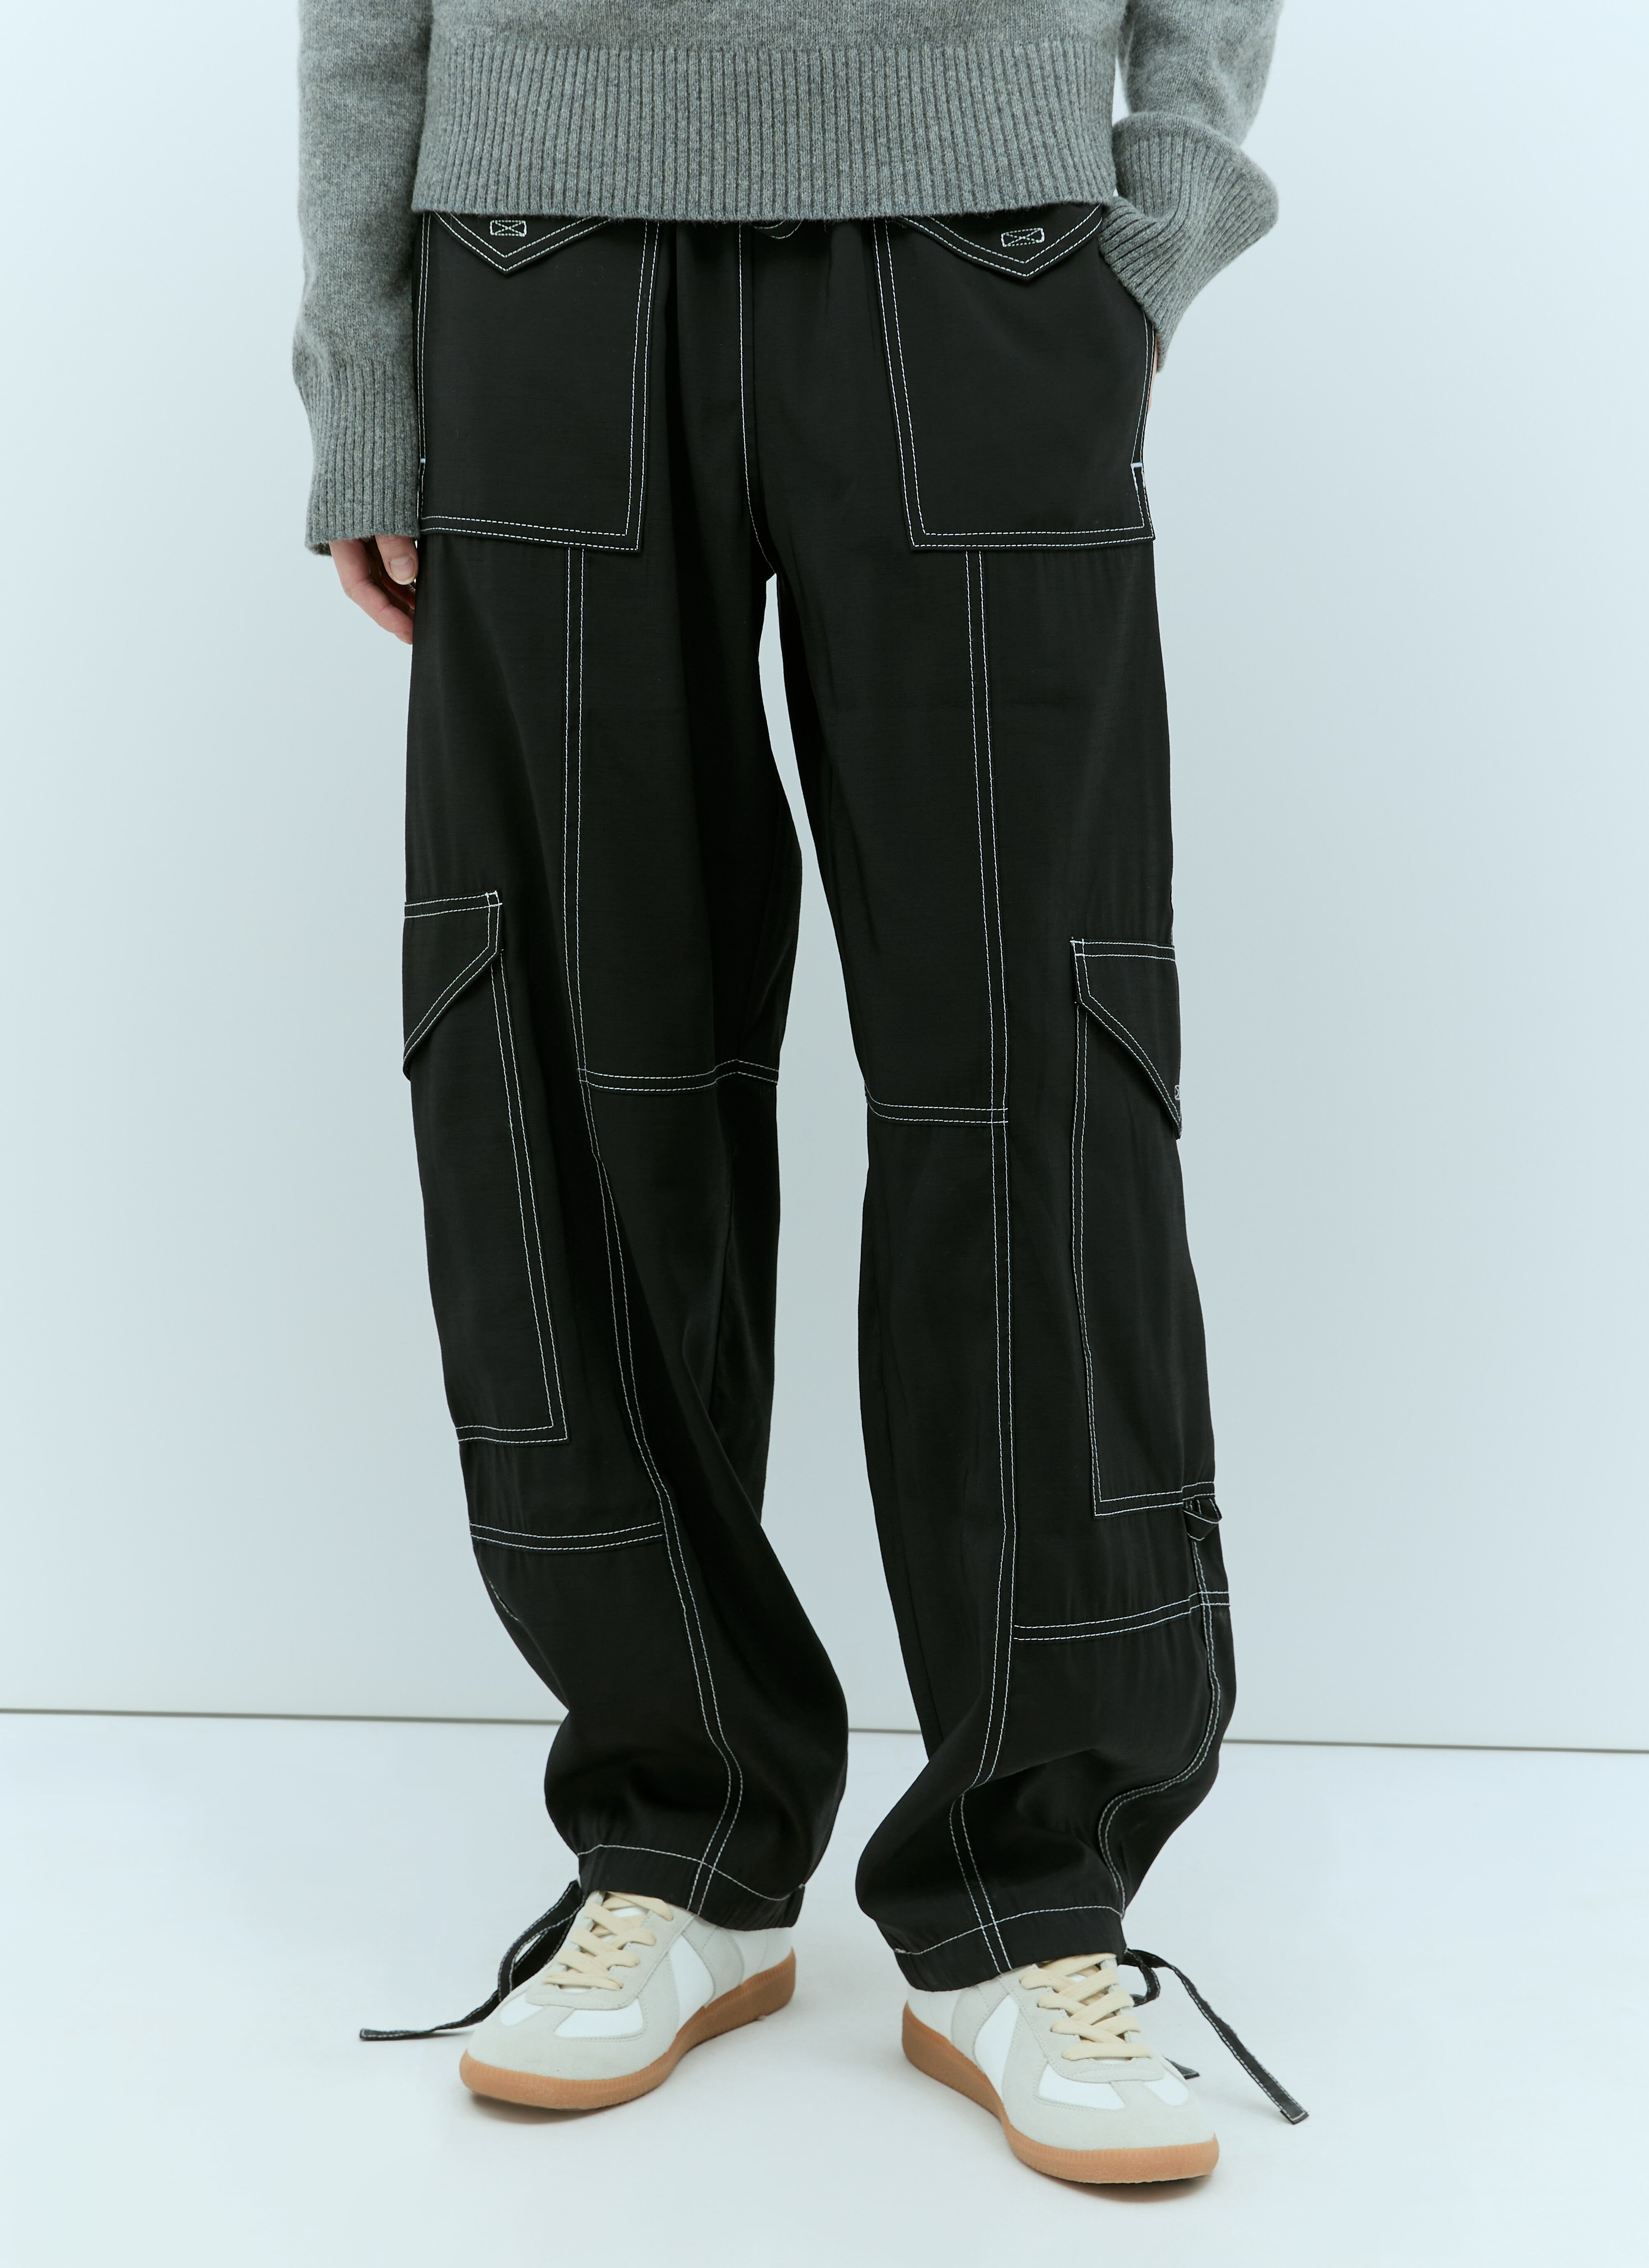 Acne Studios Light Slub Pocket Pants Beige acn0257018